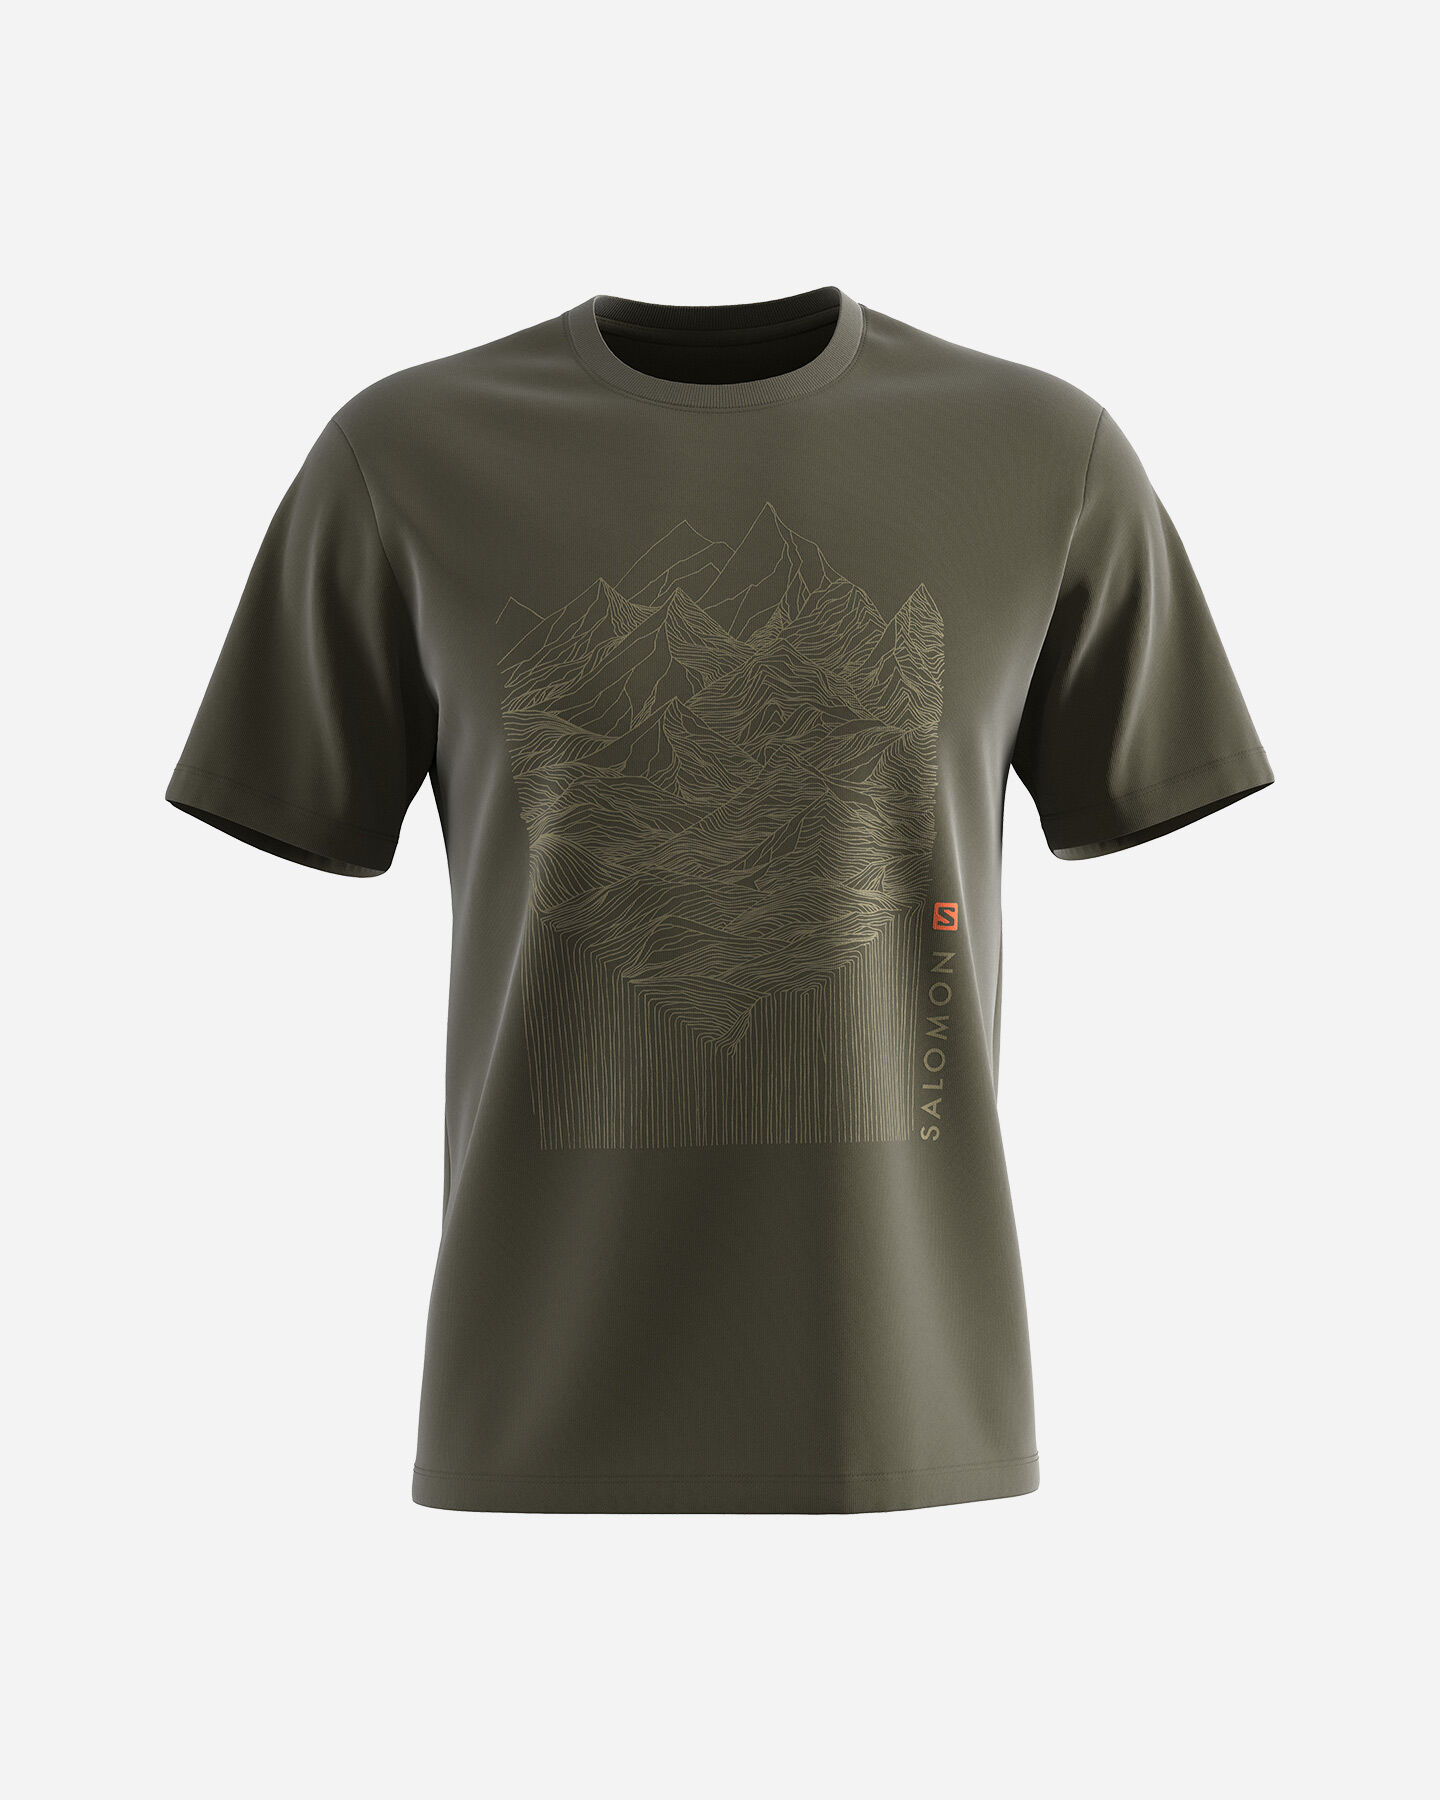  T-Shirt SALOMON OUTLIFE MOUNTAIN M S5407815|UNI|S scatto 0